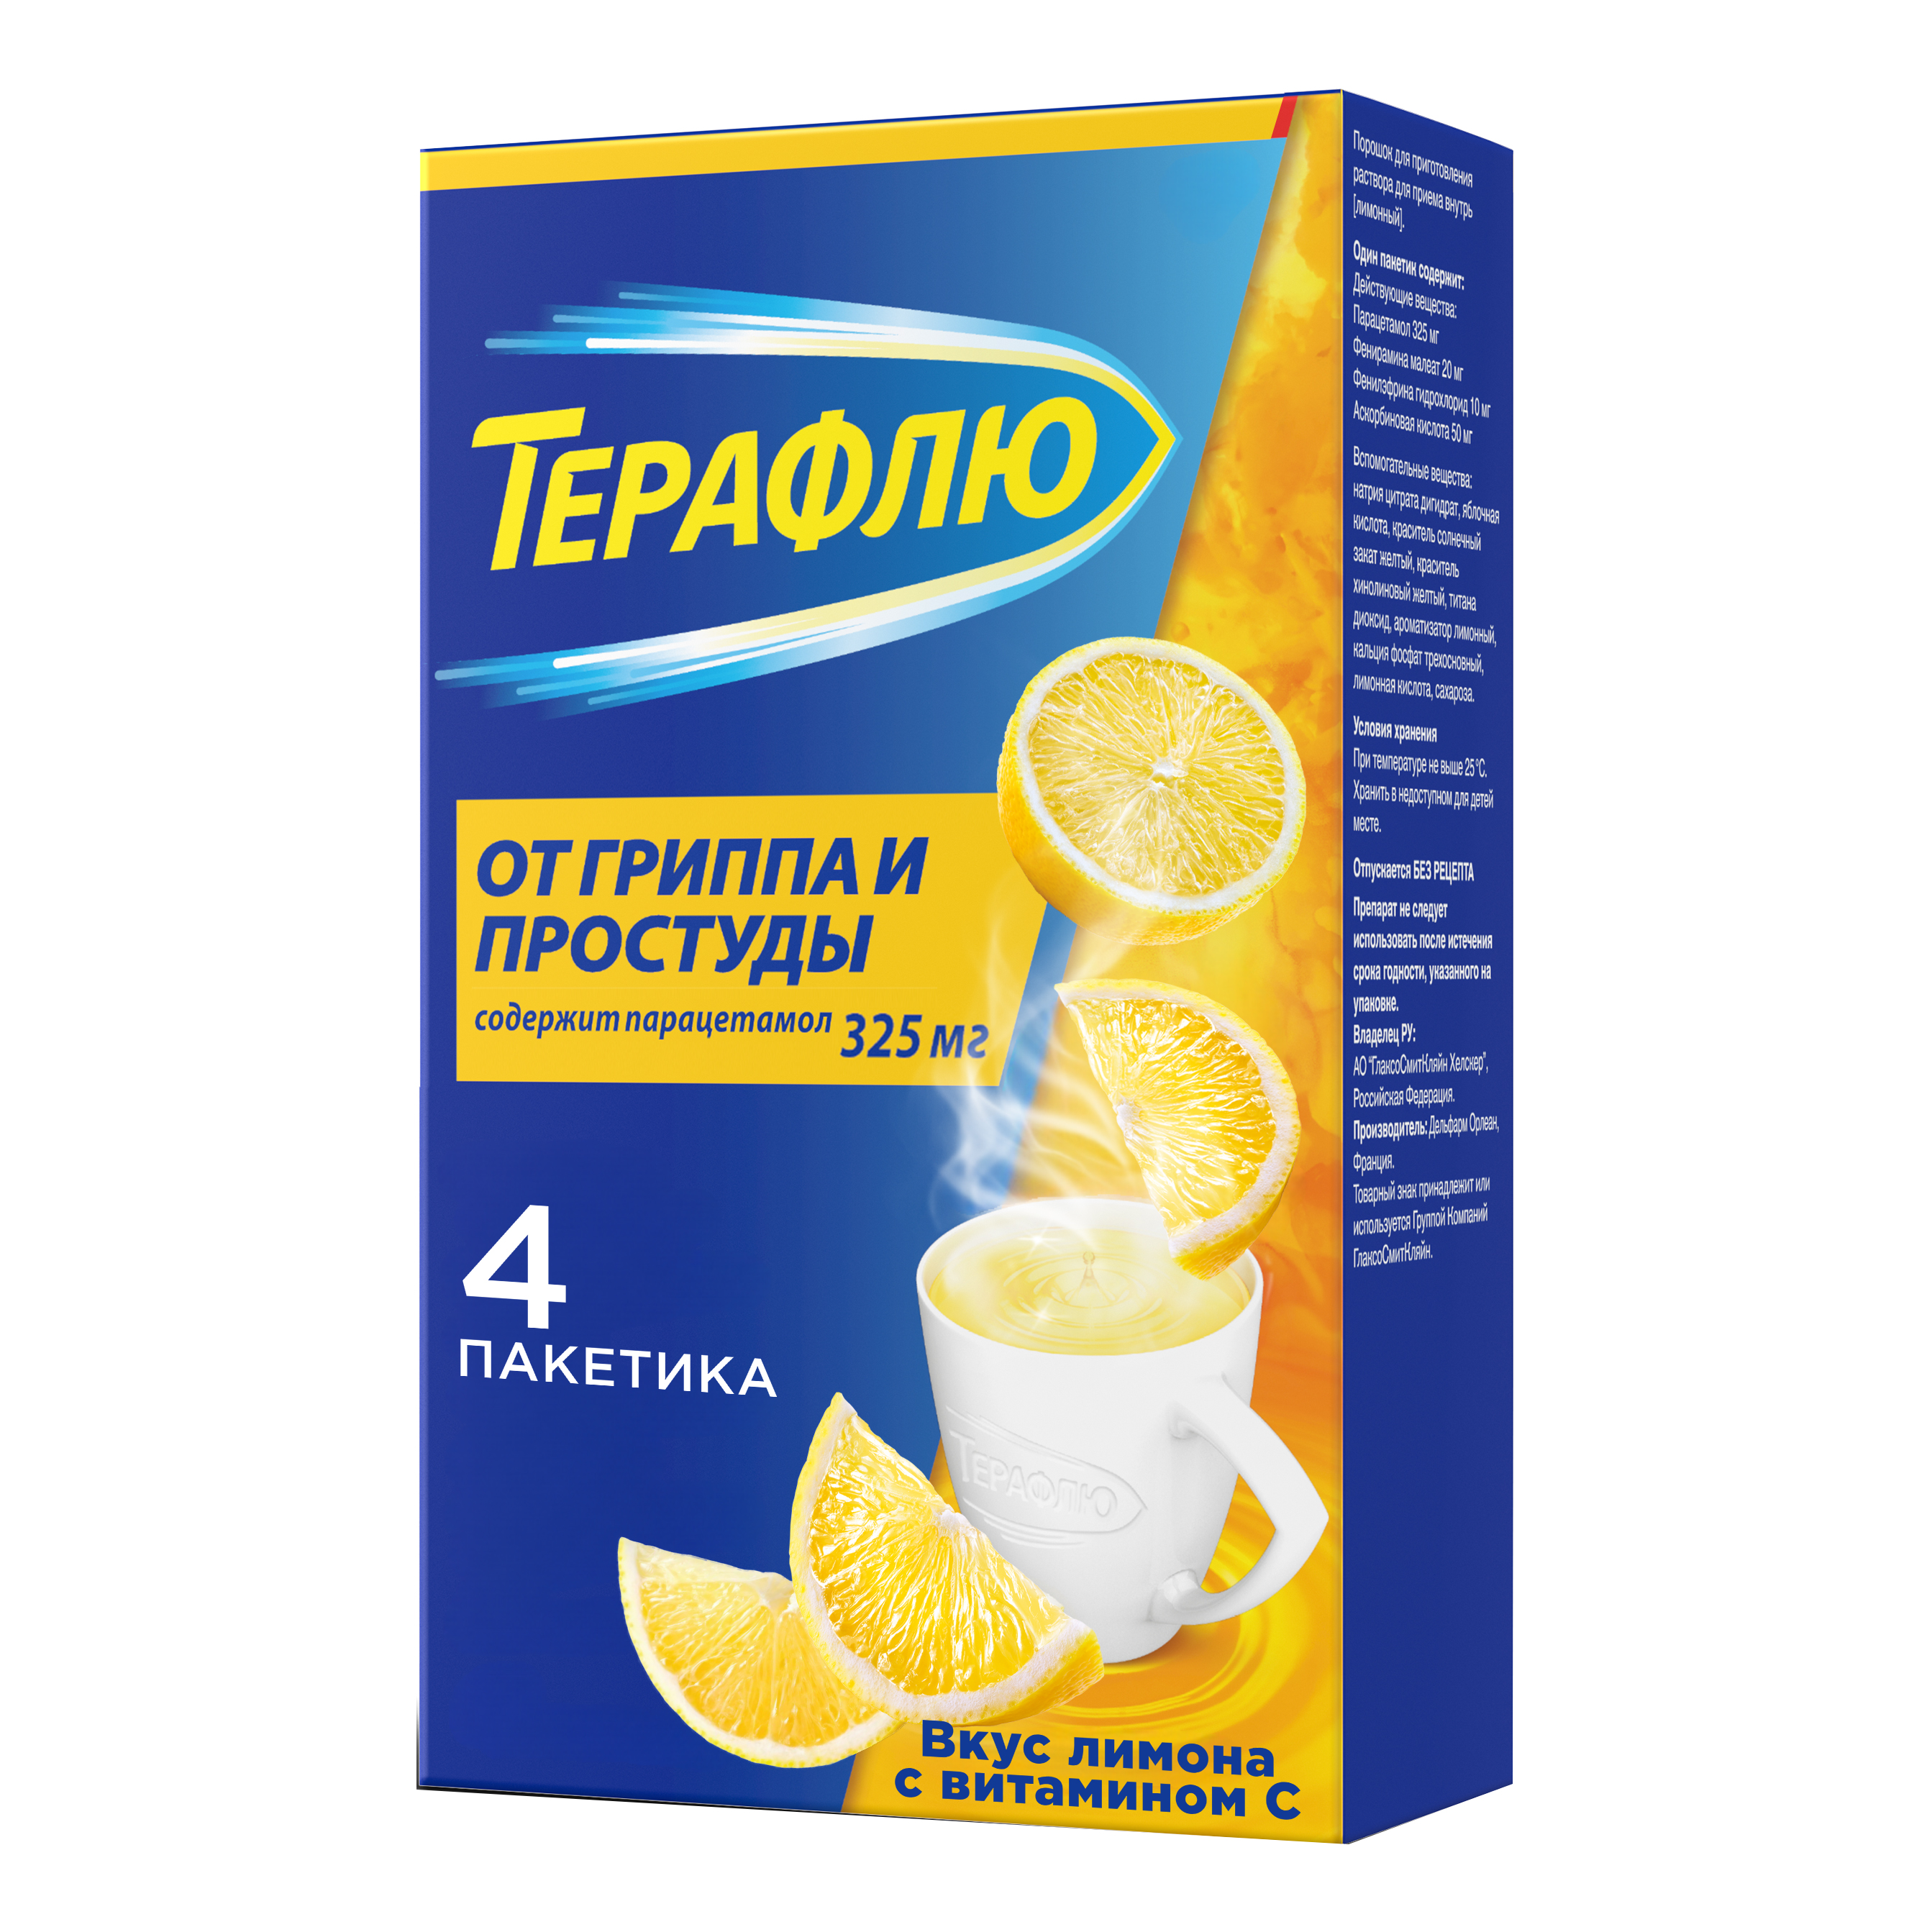 ТераФлю жаропонижающее обезболивающее средство от симптомов гриппа и простуды, 4 шт. терафлю экстра пор д р ра д приема вн пак 4 лимон